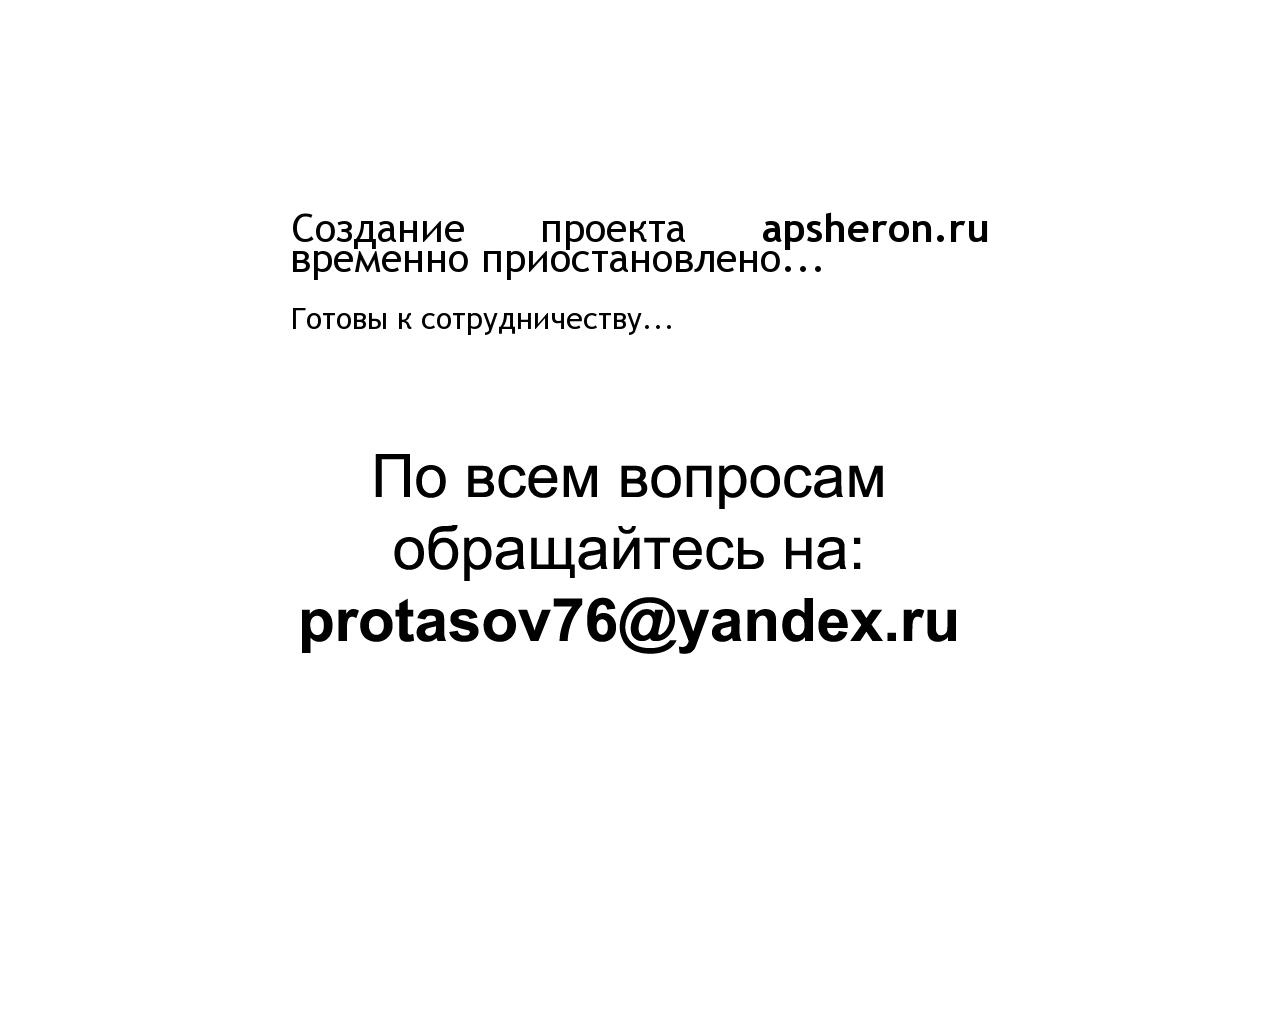 Изображение сайта apsheron.ru в разрешении 1280x1024